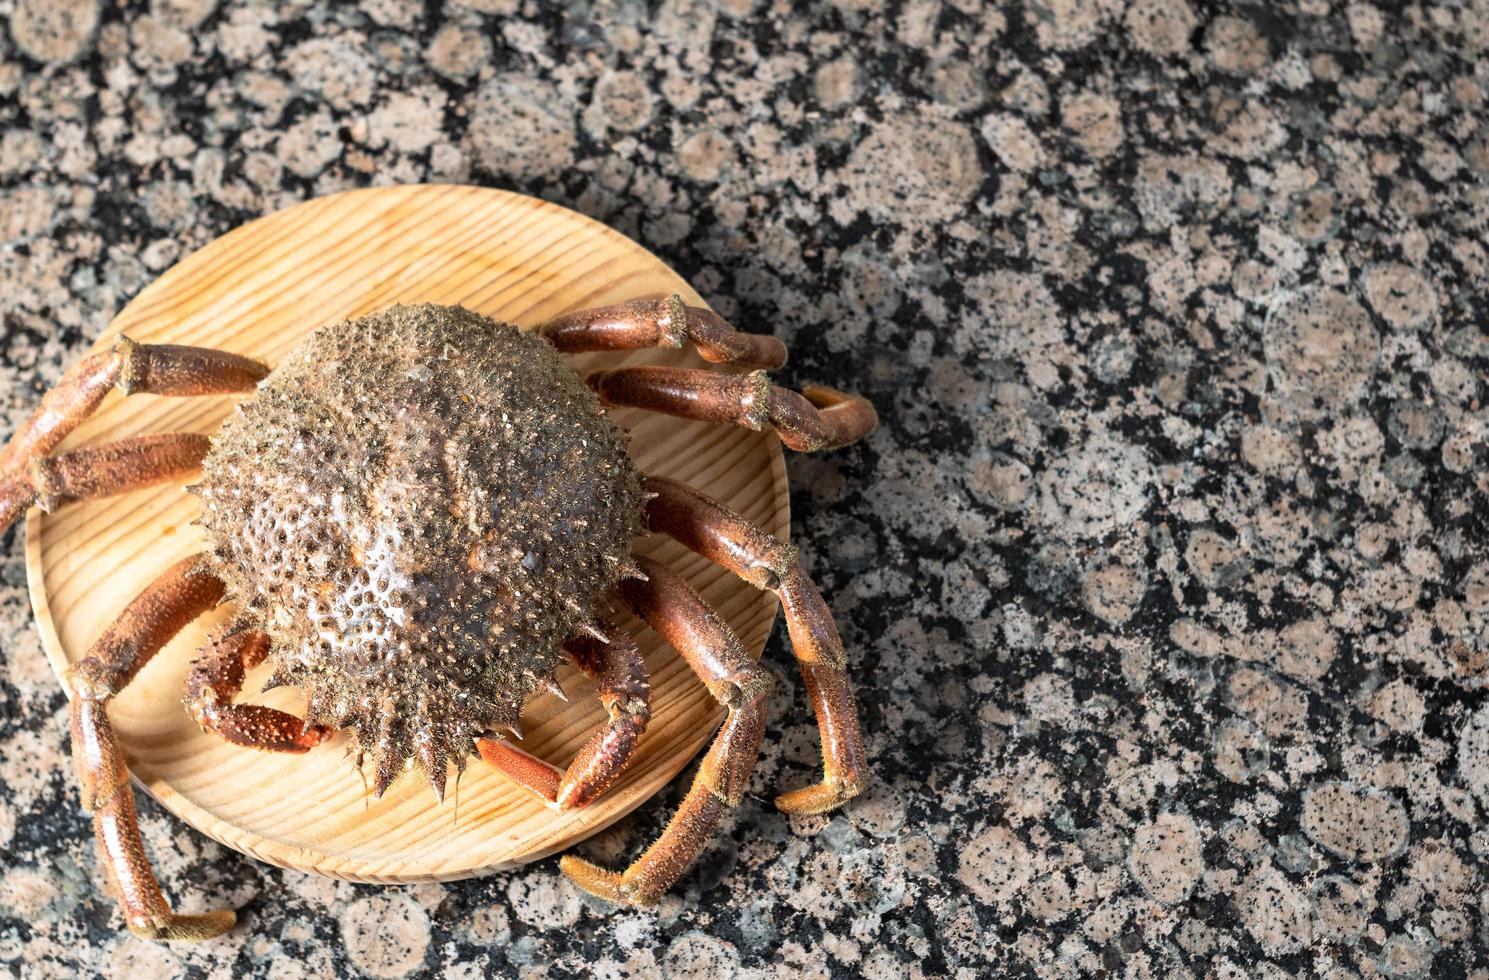 vue de dessus d'un crabe sur une plaque en bois photo